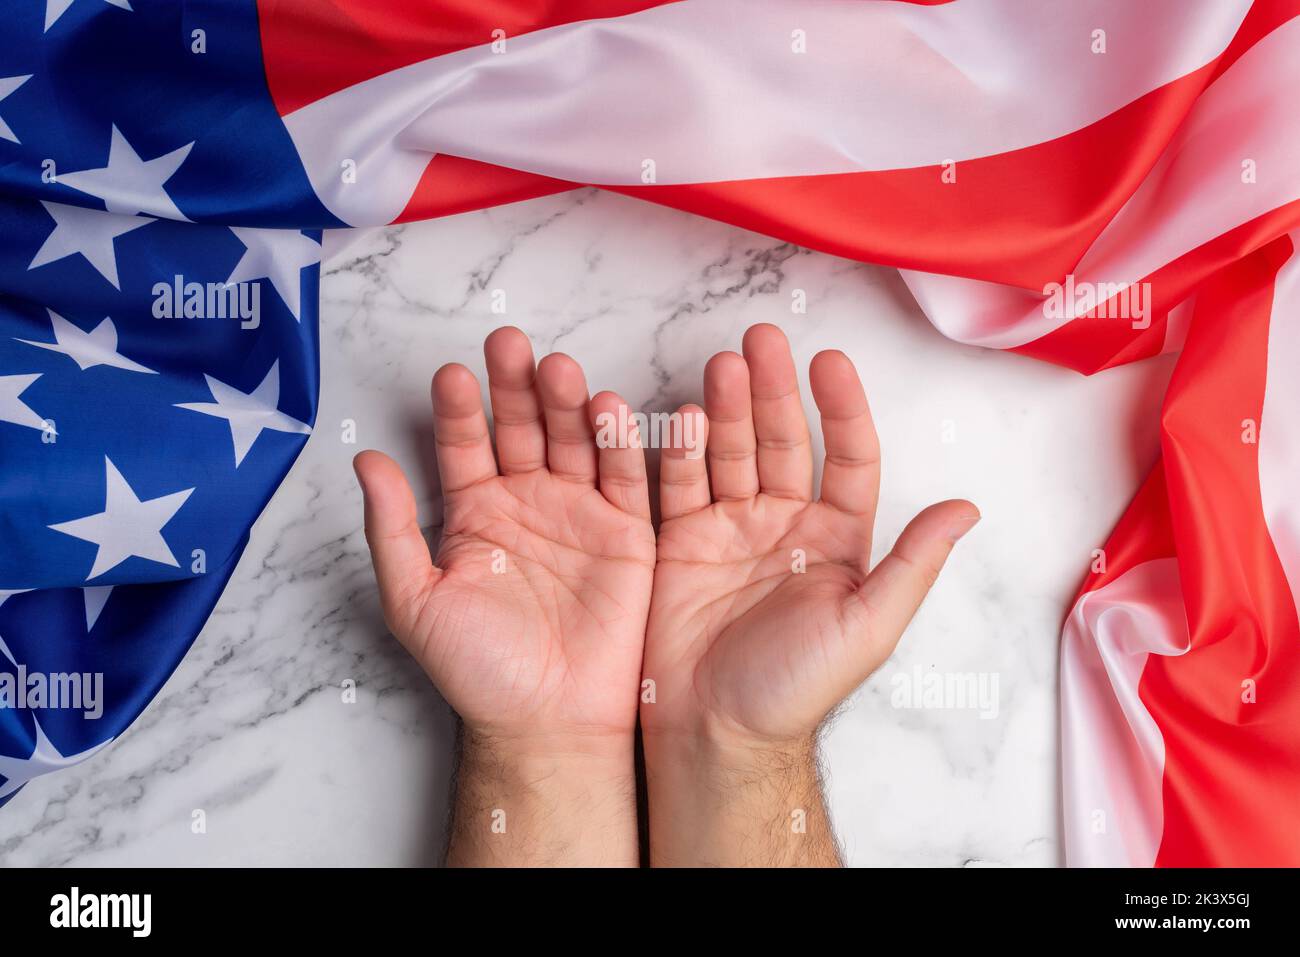 Contexte à deux mains ouvertes entouré par le drapeau des États-Unis d'Amérique symbolisant l'accueil et la bonne réception de ce pays. Gratuit Banque D'Images